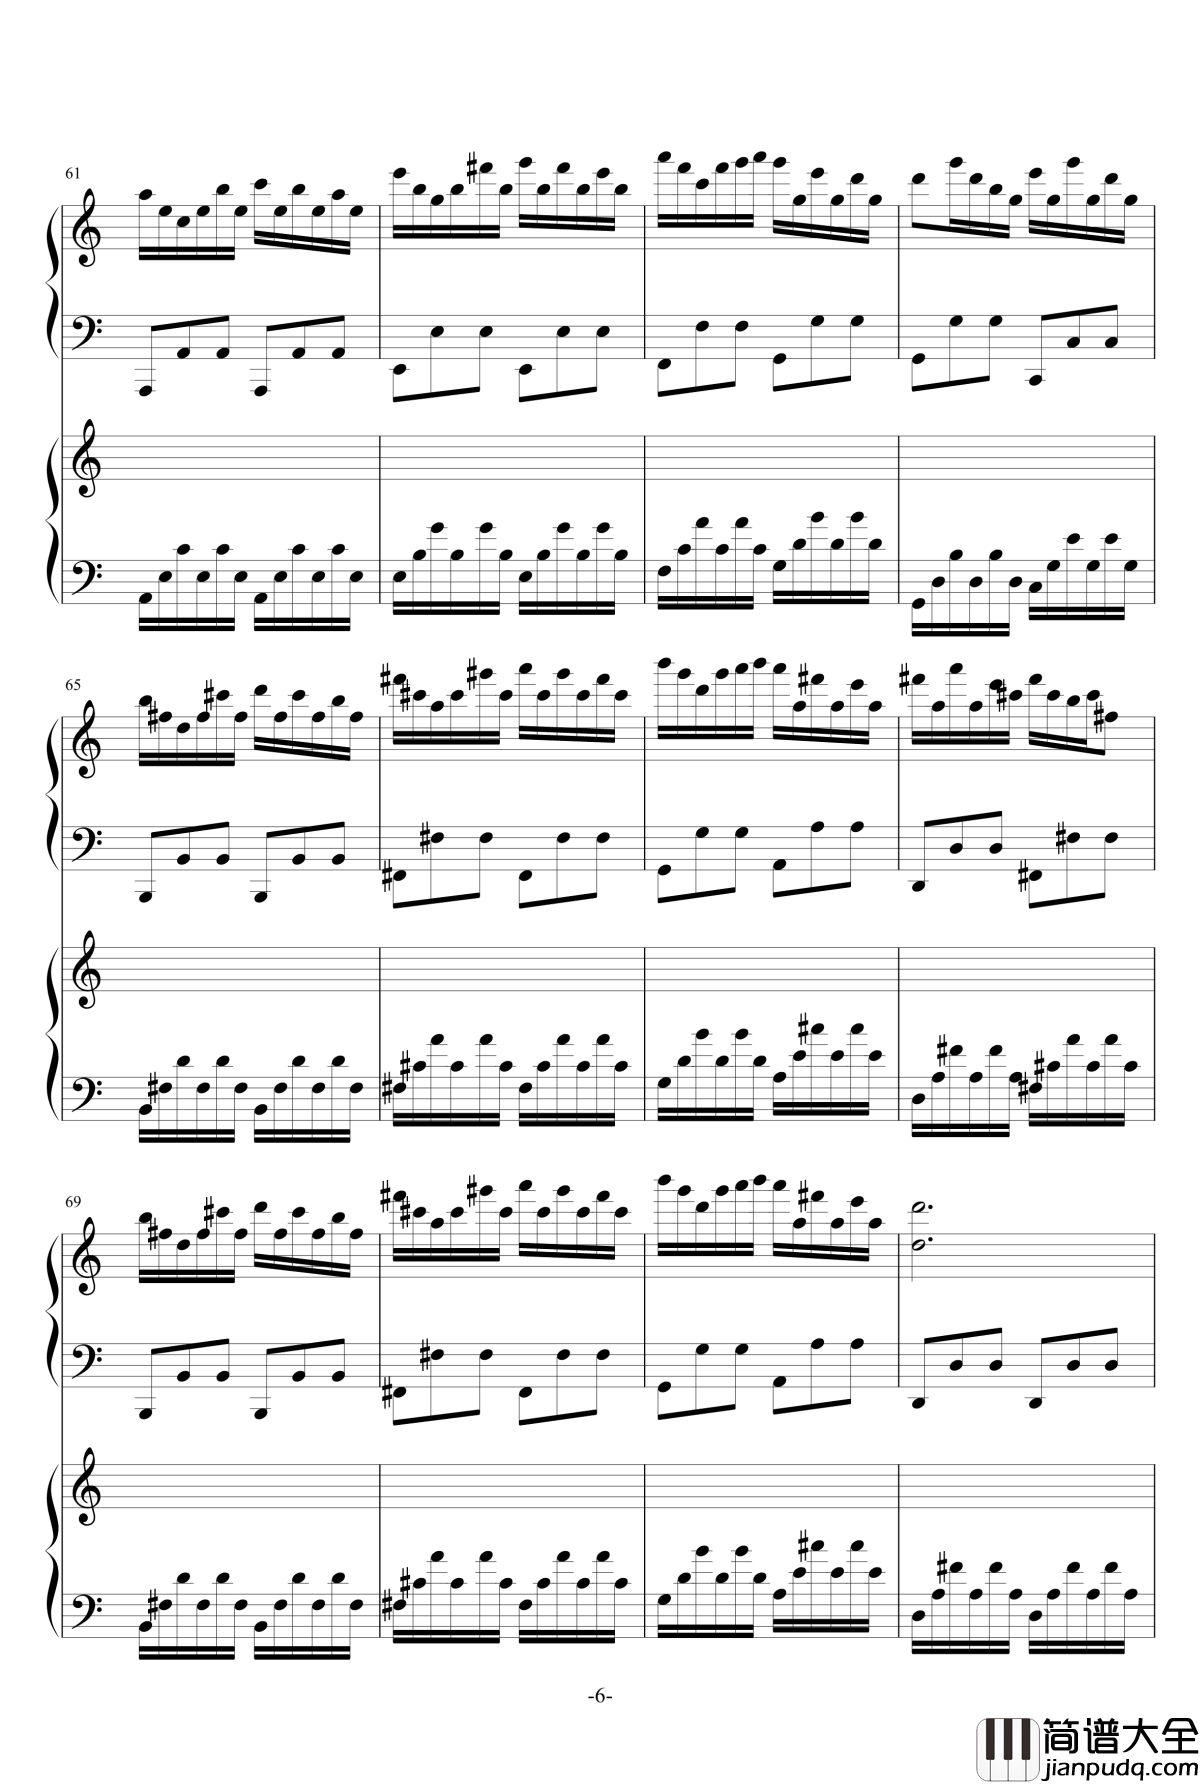 极品钢琴高手练习曲3钢琴谱_as2134